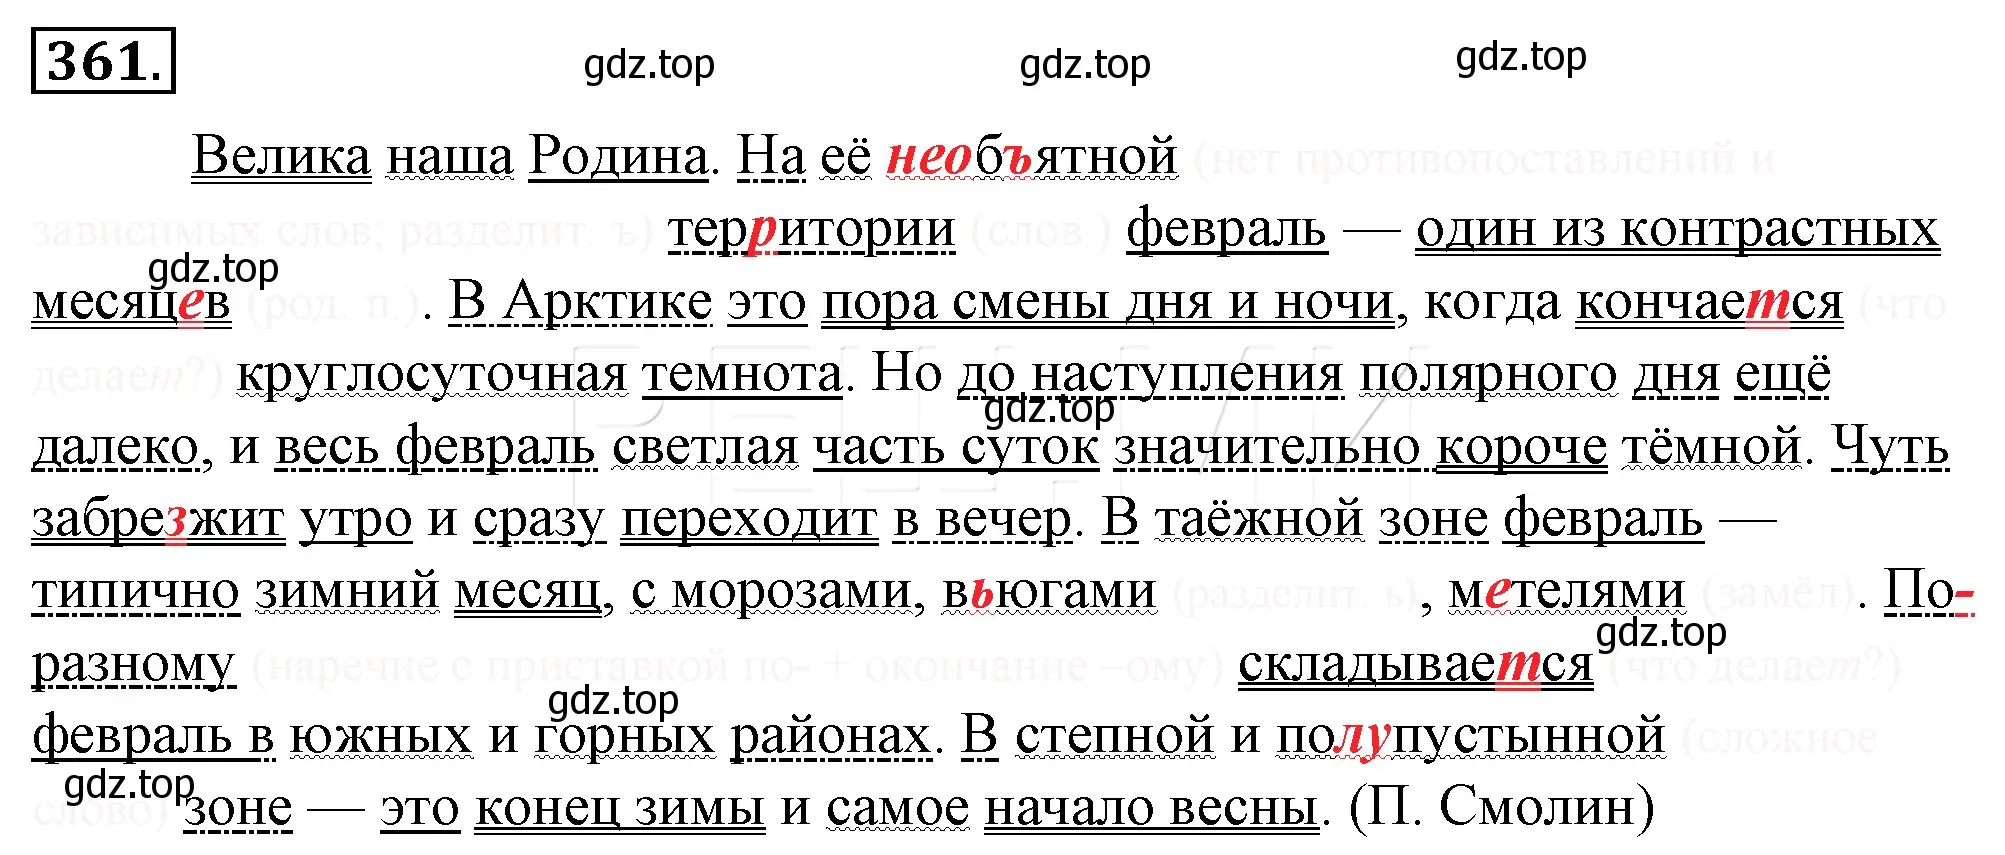 Решение 4. номер 26 (страница 33) гдз по русскому языку 10-11 класс Гольцова, Шамшин, учебник 2 часть